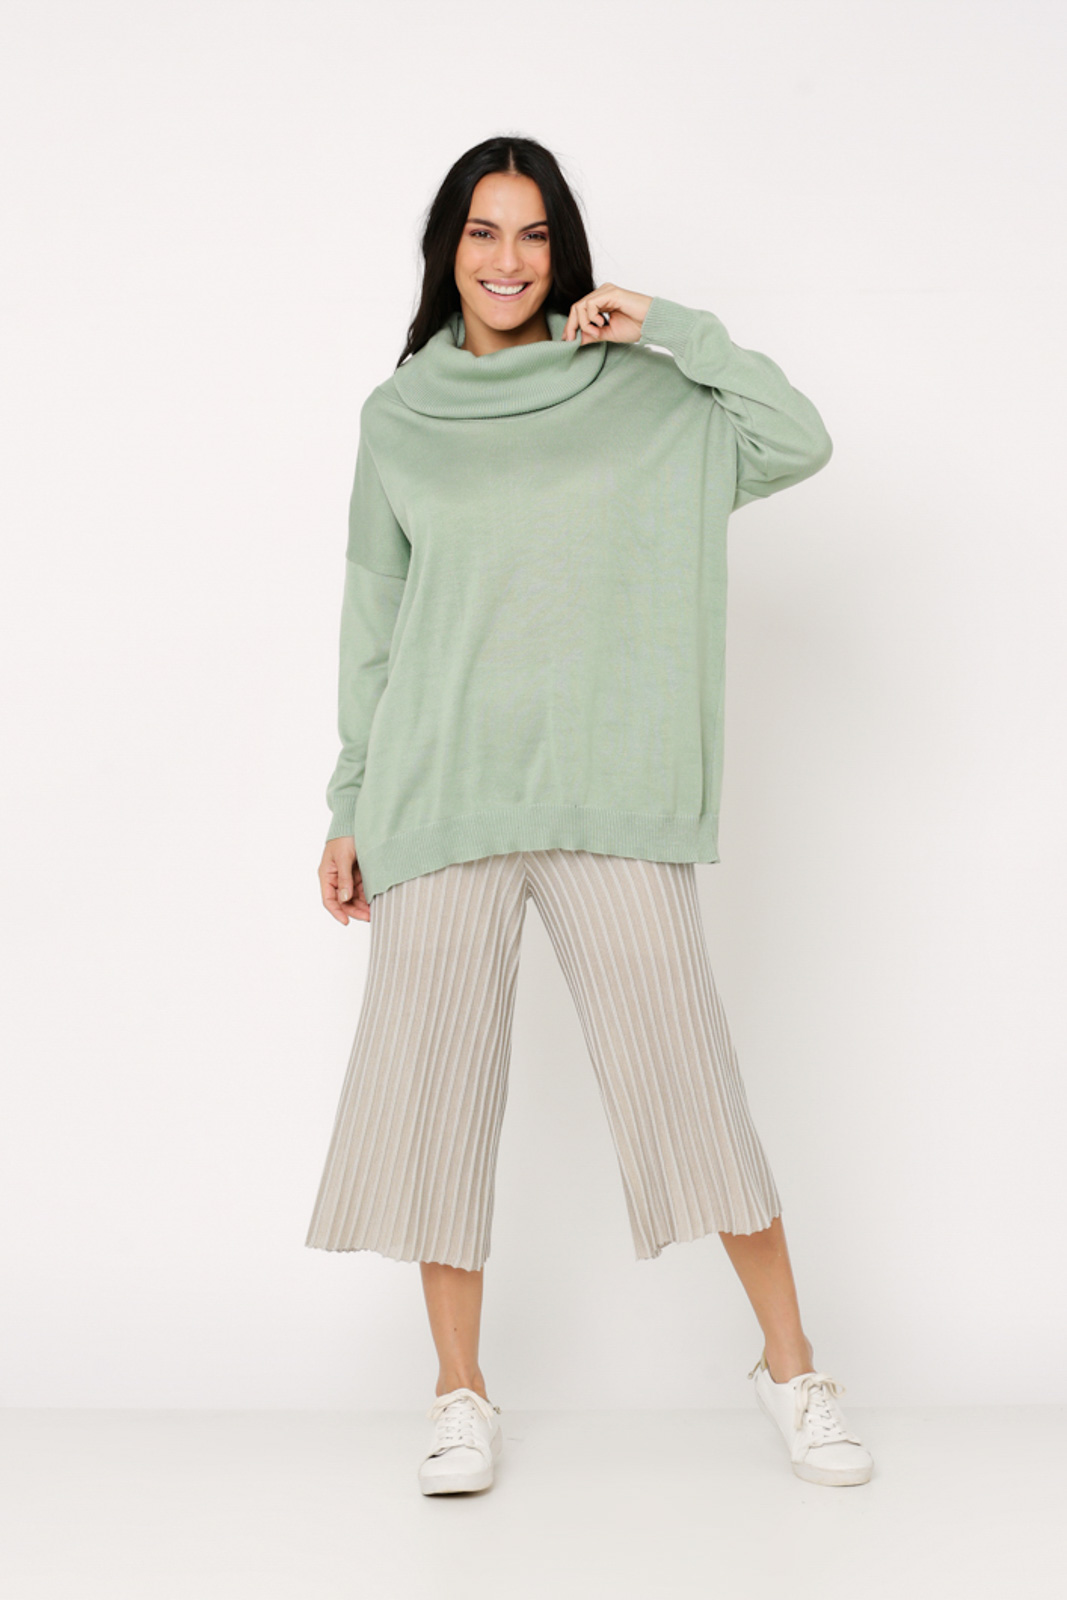 Conjunto de tricot Ralm calça pantacourt nervuras e blusa ampla gola boba - Bege